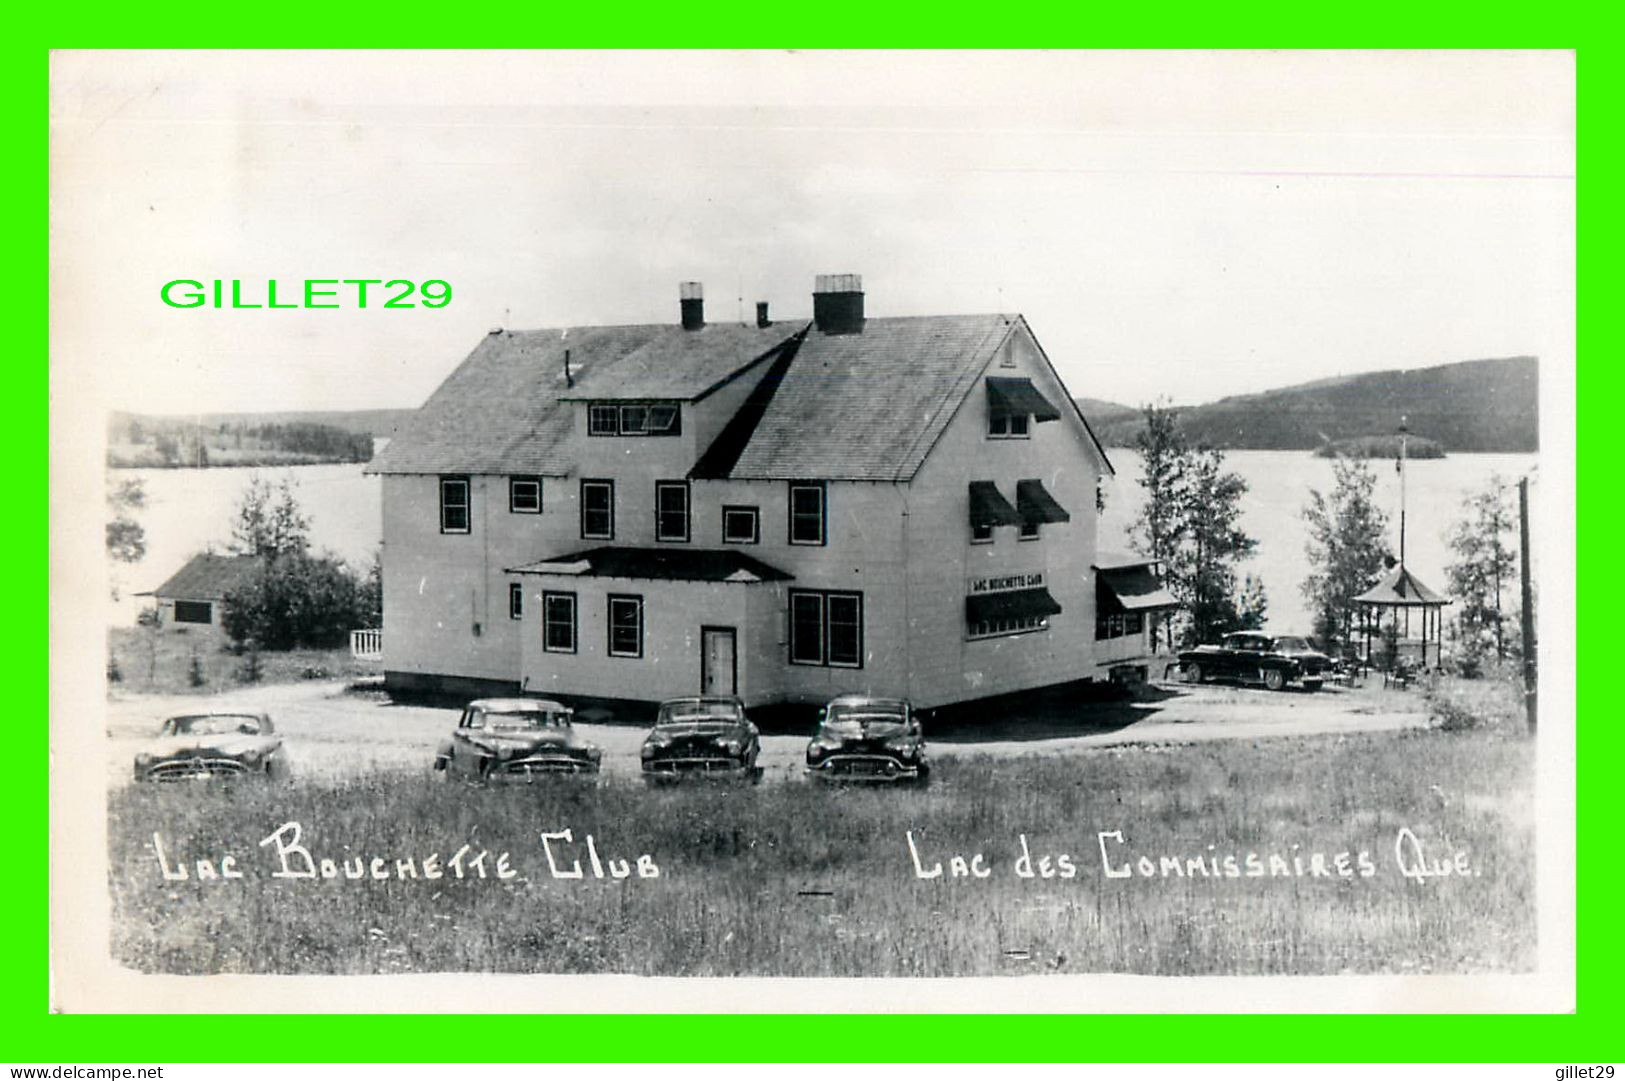 LAC DES COMMISSAIRES, QUÉBEC - LAC BOUCHETTE CLUB - ANIMÉE DE VIEILLE VOITURES - CARTE PHOTO - CIRCULÉE EN 1955 - - Saguenay